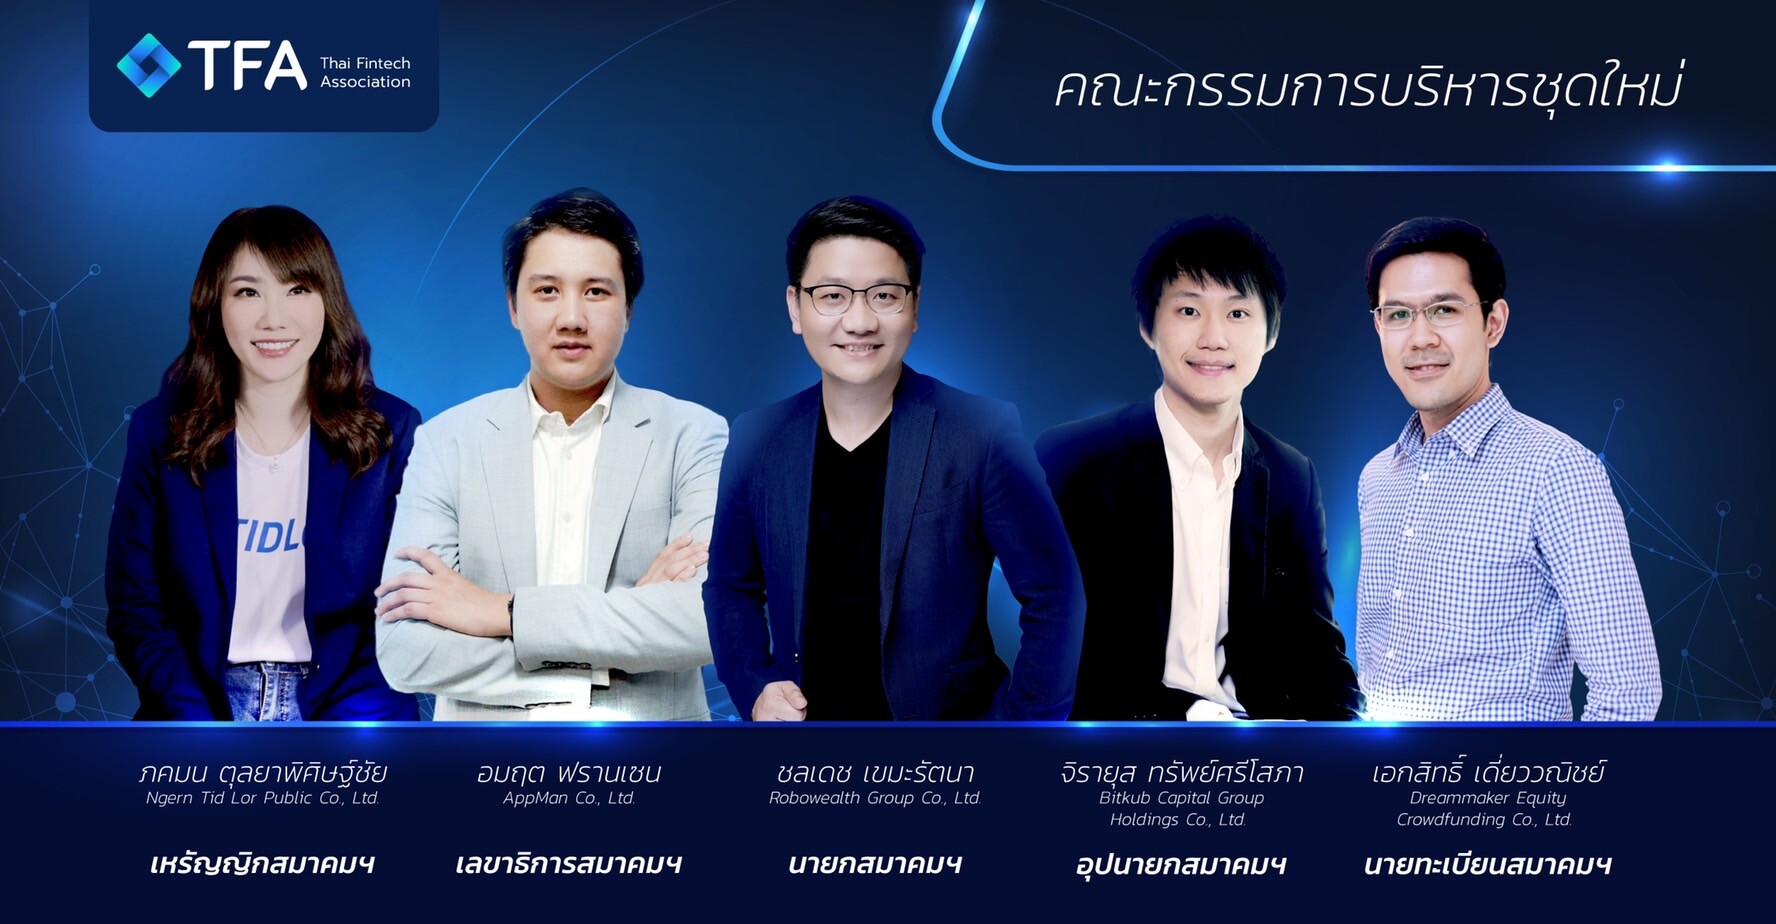 เผยวิสัยทัศน์ "นึก ชลเดช" นายกสมาคมฟินเทค ตั้งเป้าดันประเทศไทย สู่ Top 5 ฟินเทคฮับในเอเชีย ภายใน 2 ปี